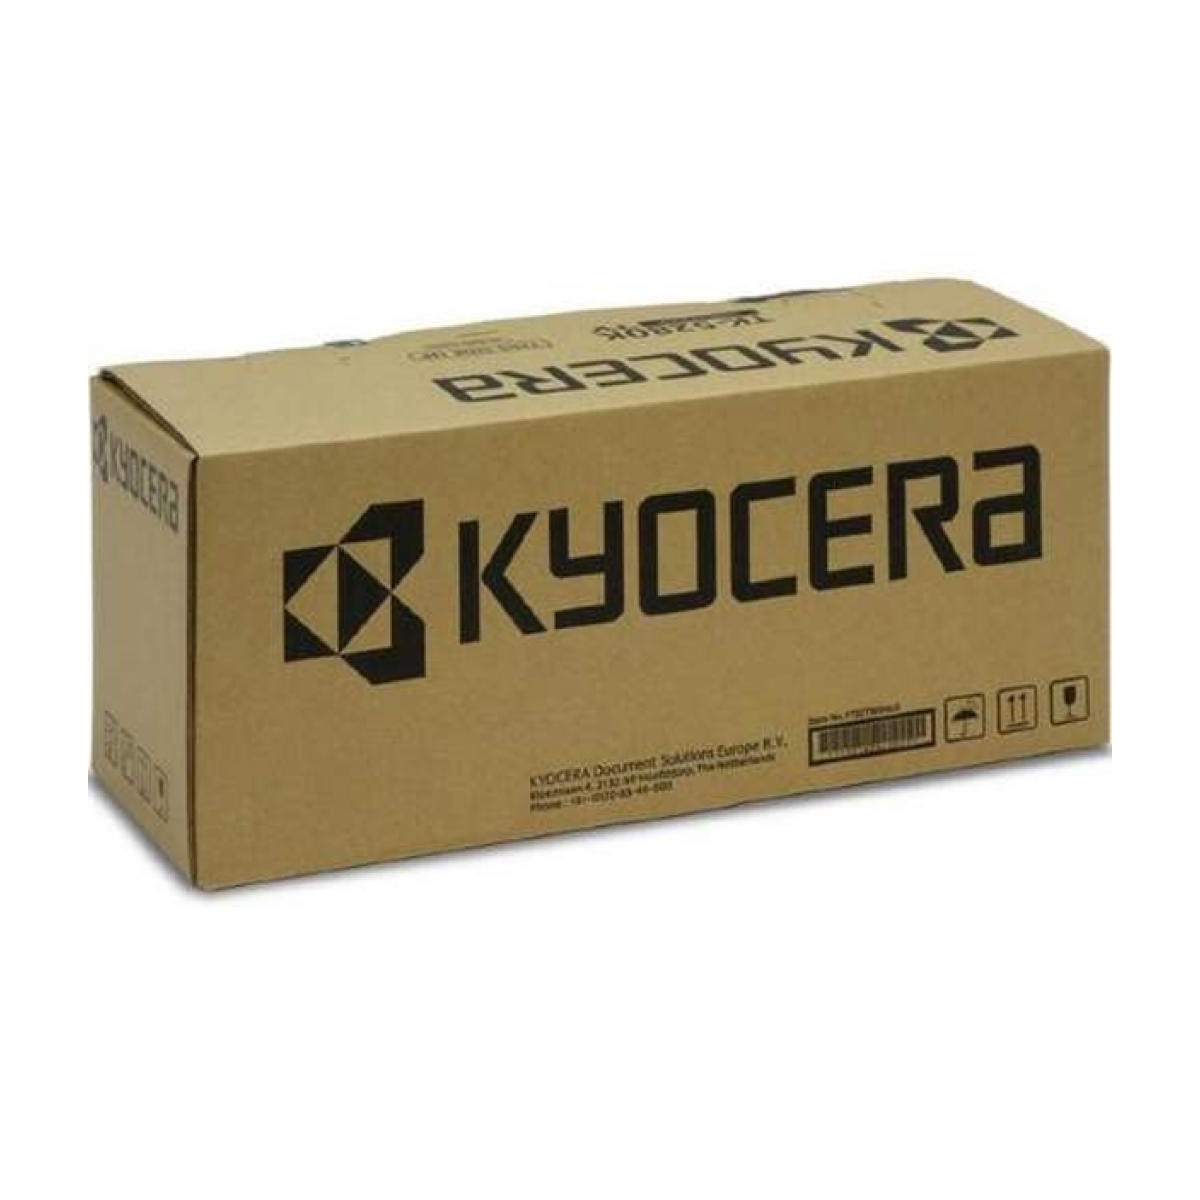 Kyocera MK-3260 - Maintenance kit - Laser - 300000 pages - Kyocera - ECOSYS M3145/3645dn